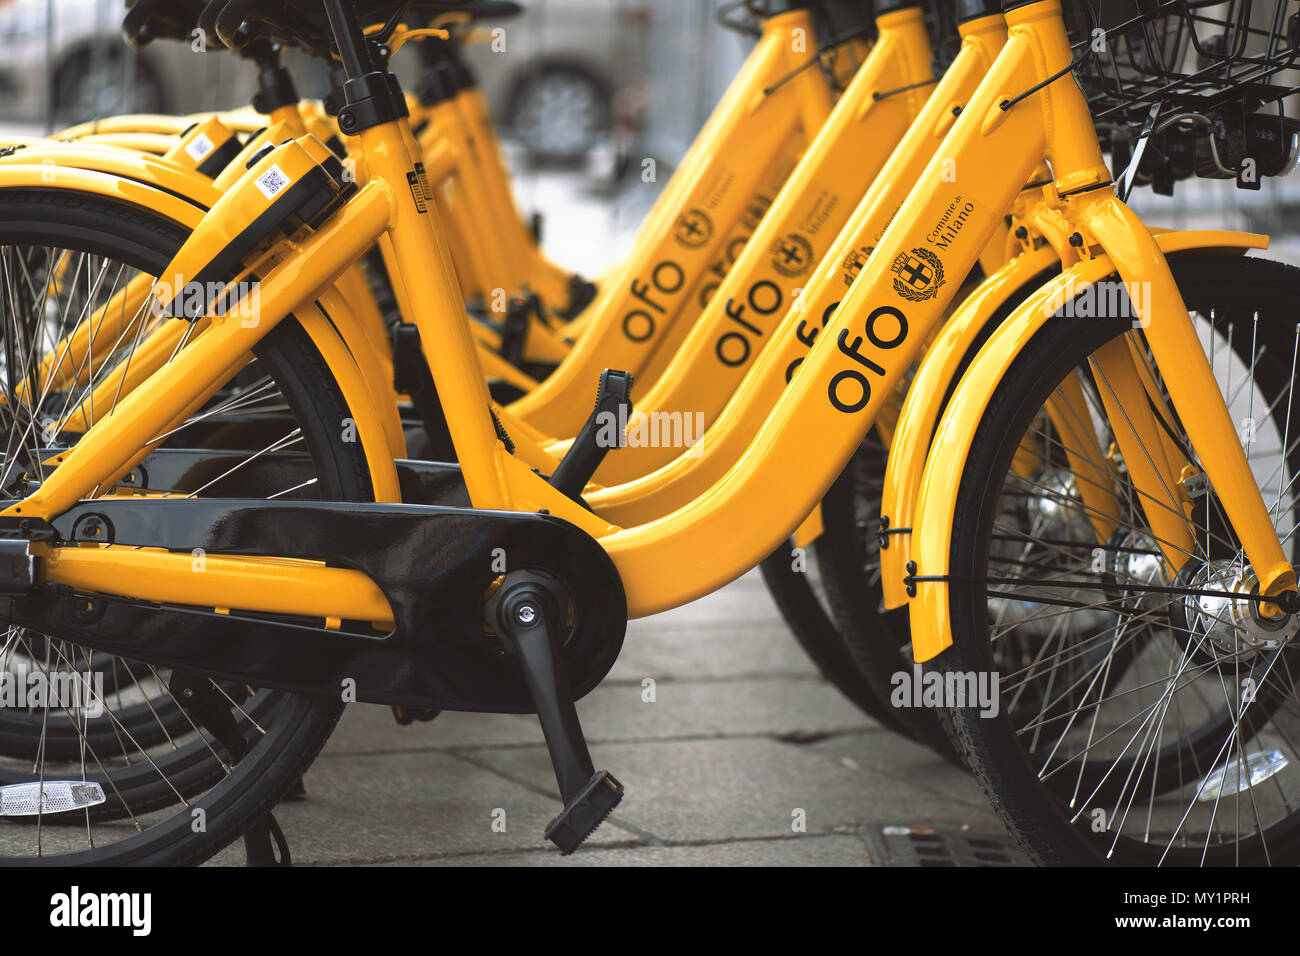 Mailand Italien 30 Meine 2018: Bike Sharing in Mailand. Fahrräder sind für das Ticket für die öffentlichen Verkehrsmittel zur Verfügung. Stockfoto